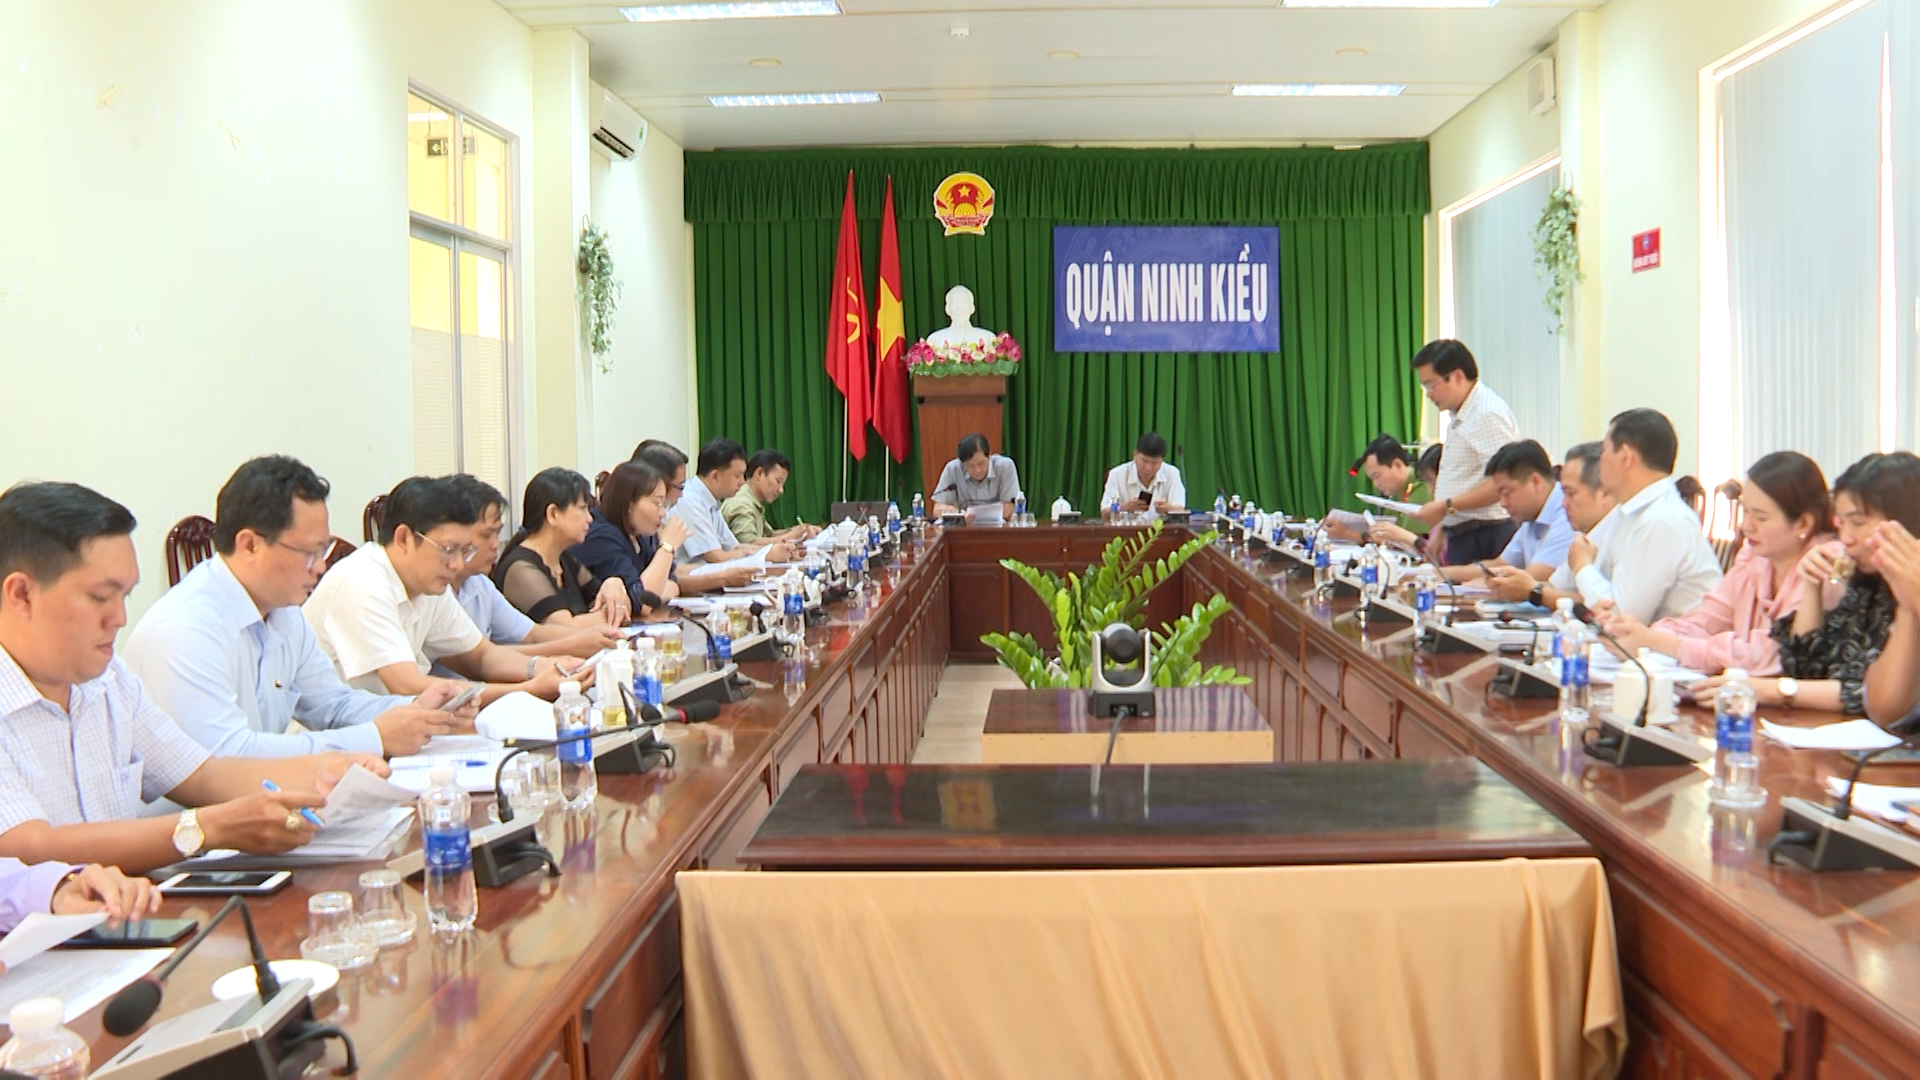 Hình 1: UBND quận Ninh Kiều tổ chức Hội nghị tổng kết chủ đề năm 2023 "Tập trung các giải pháp nhằm đảm bảo công tác trật tự đô thị và quản lý đất công trên địa bàn" 